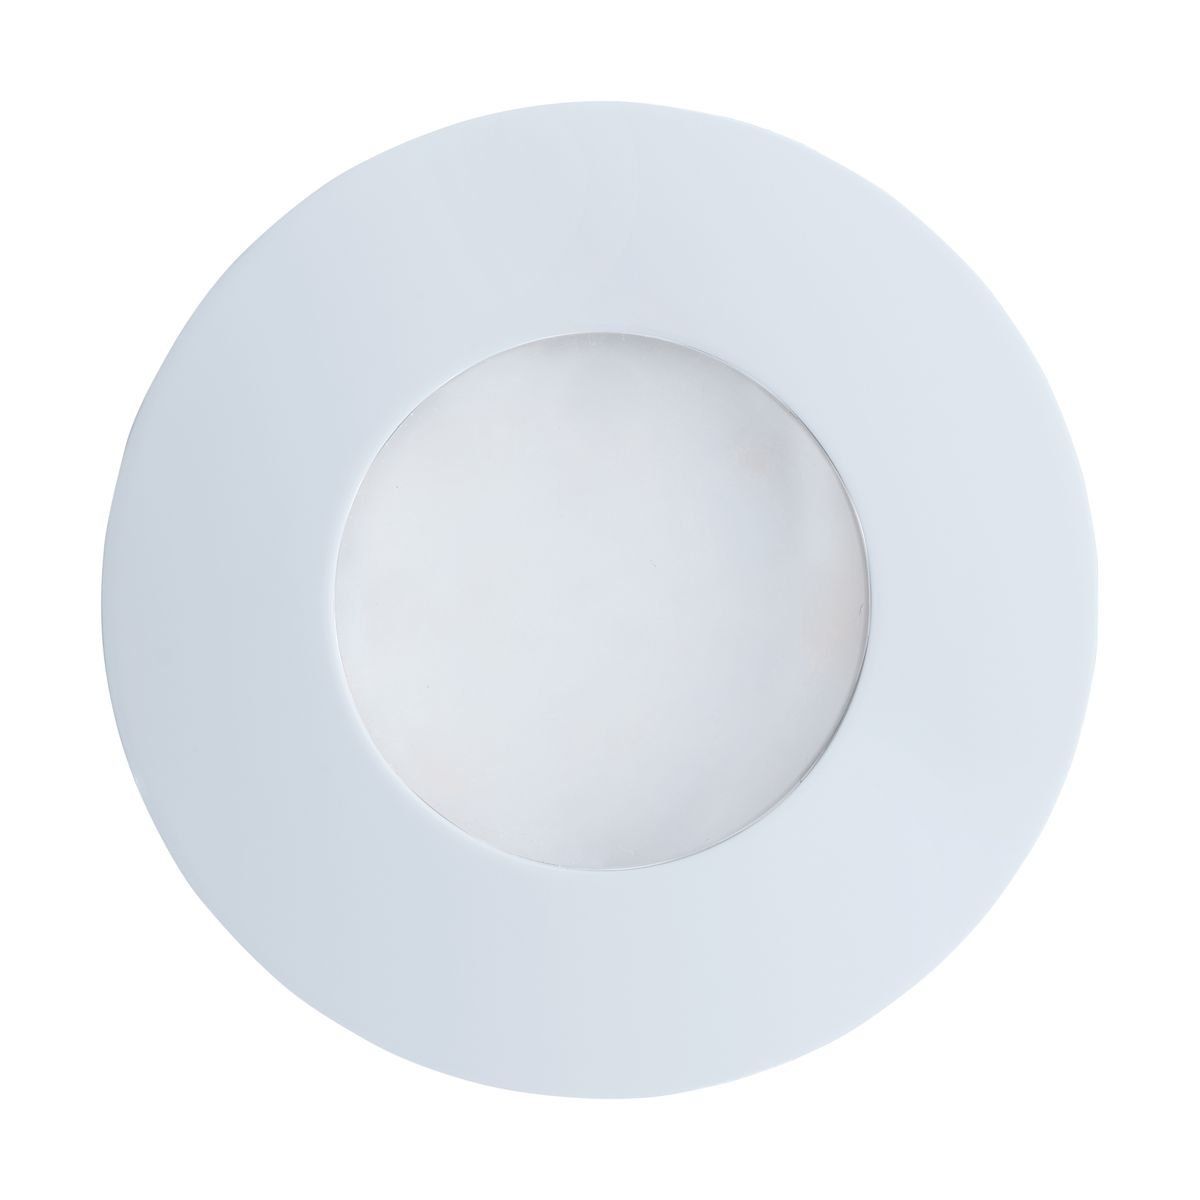 Spot LED encastrable et orientable PRENIUM en métal blanc - Keria et Laurie  Lumière